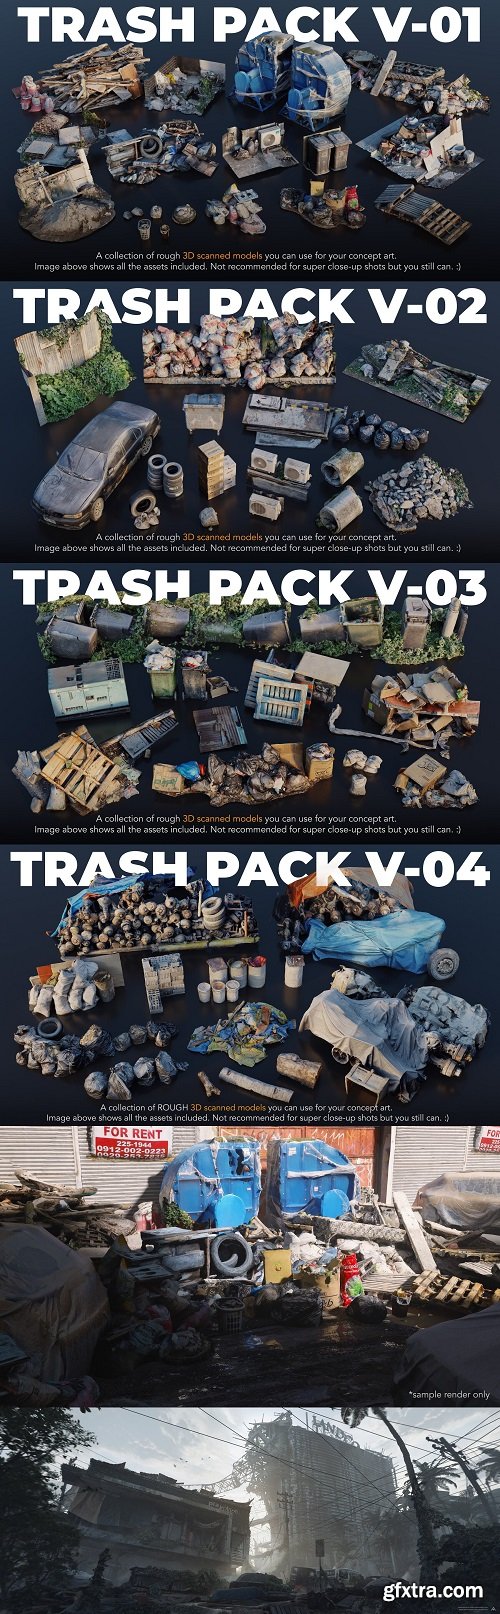 Artstation - Trash Pack V-01-04 - 3D Scanned Kitbash Assets